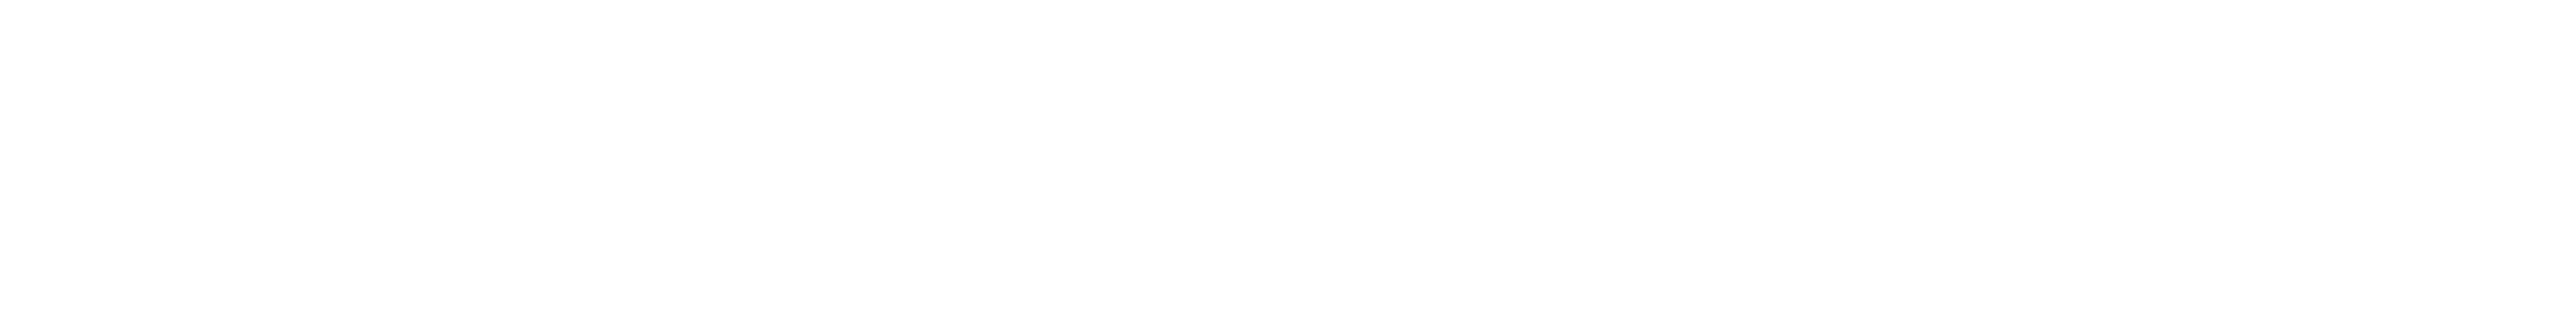 La Caleta logo